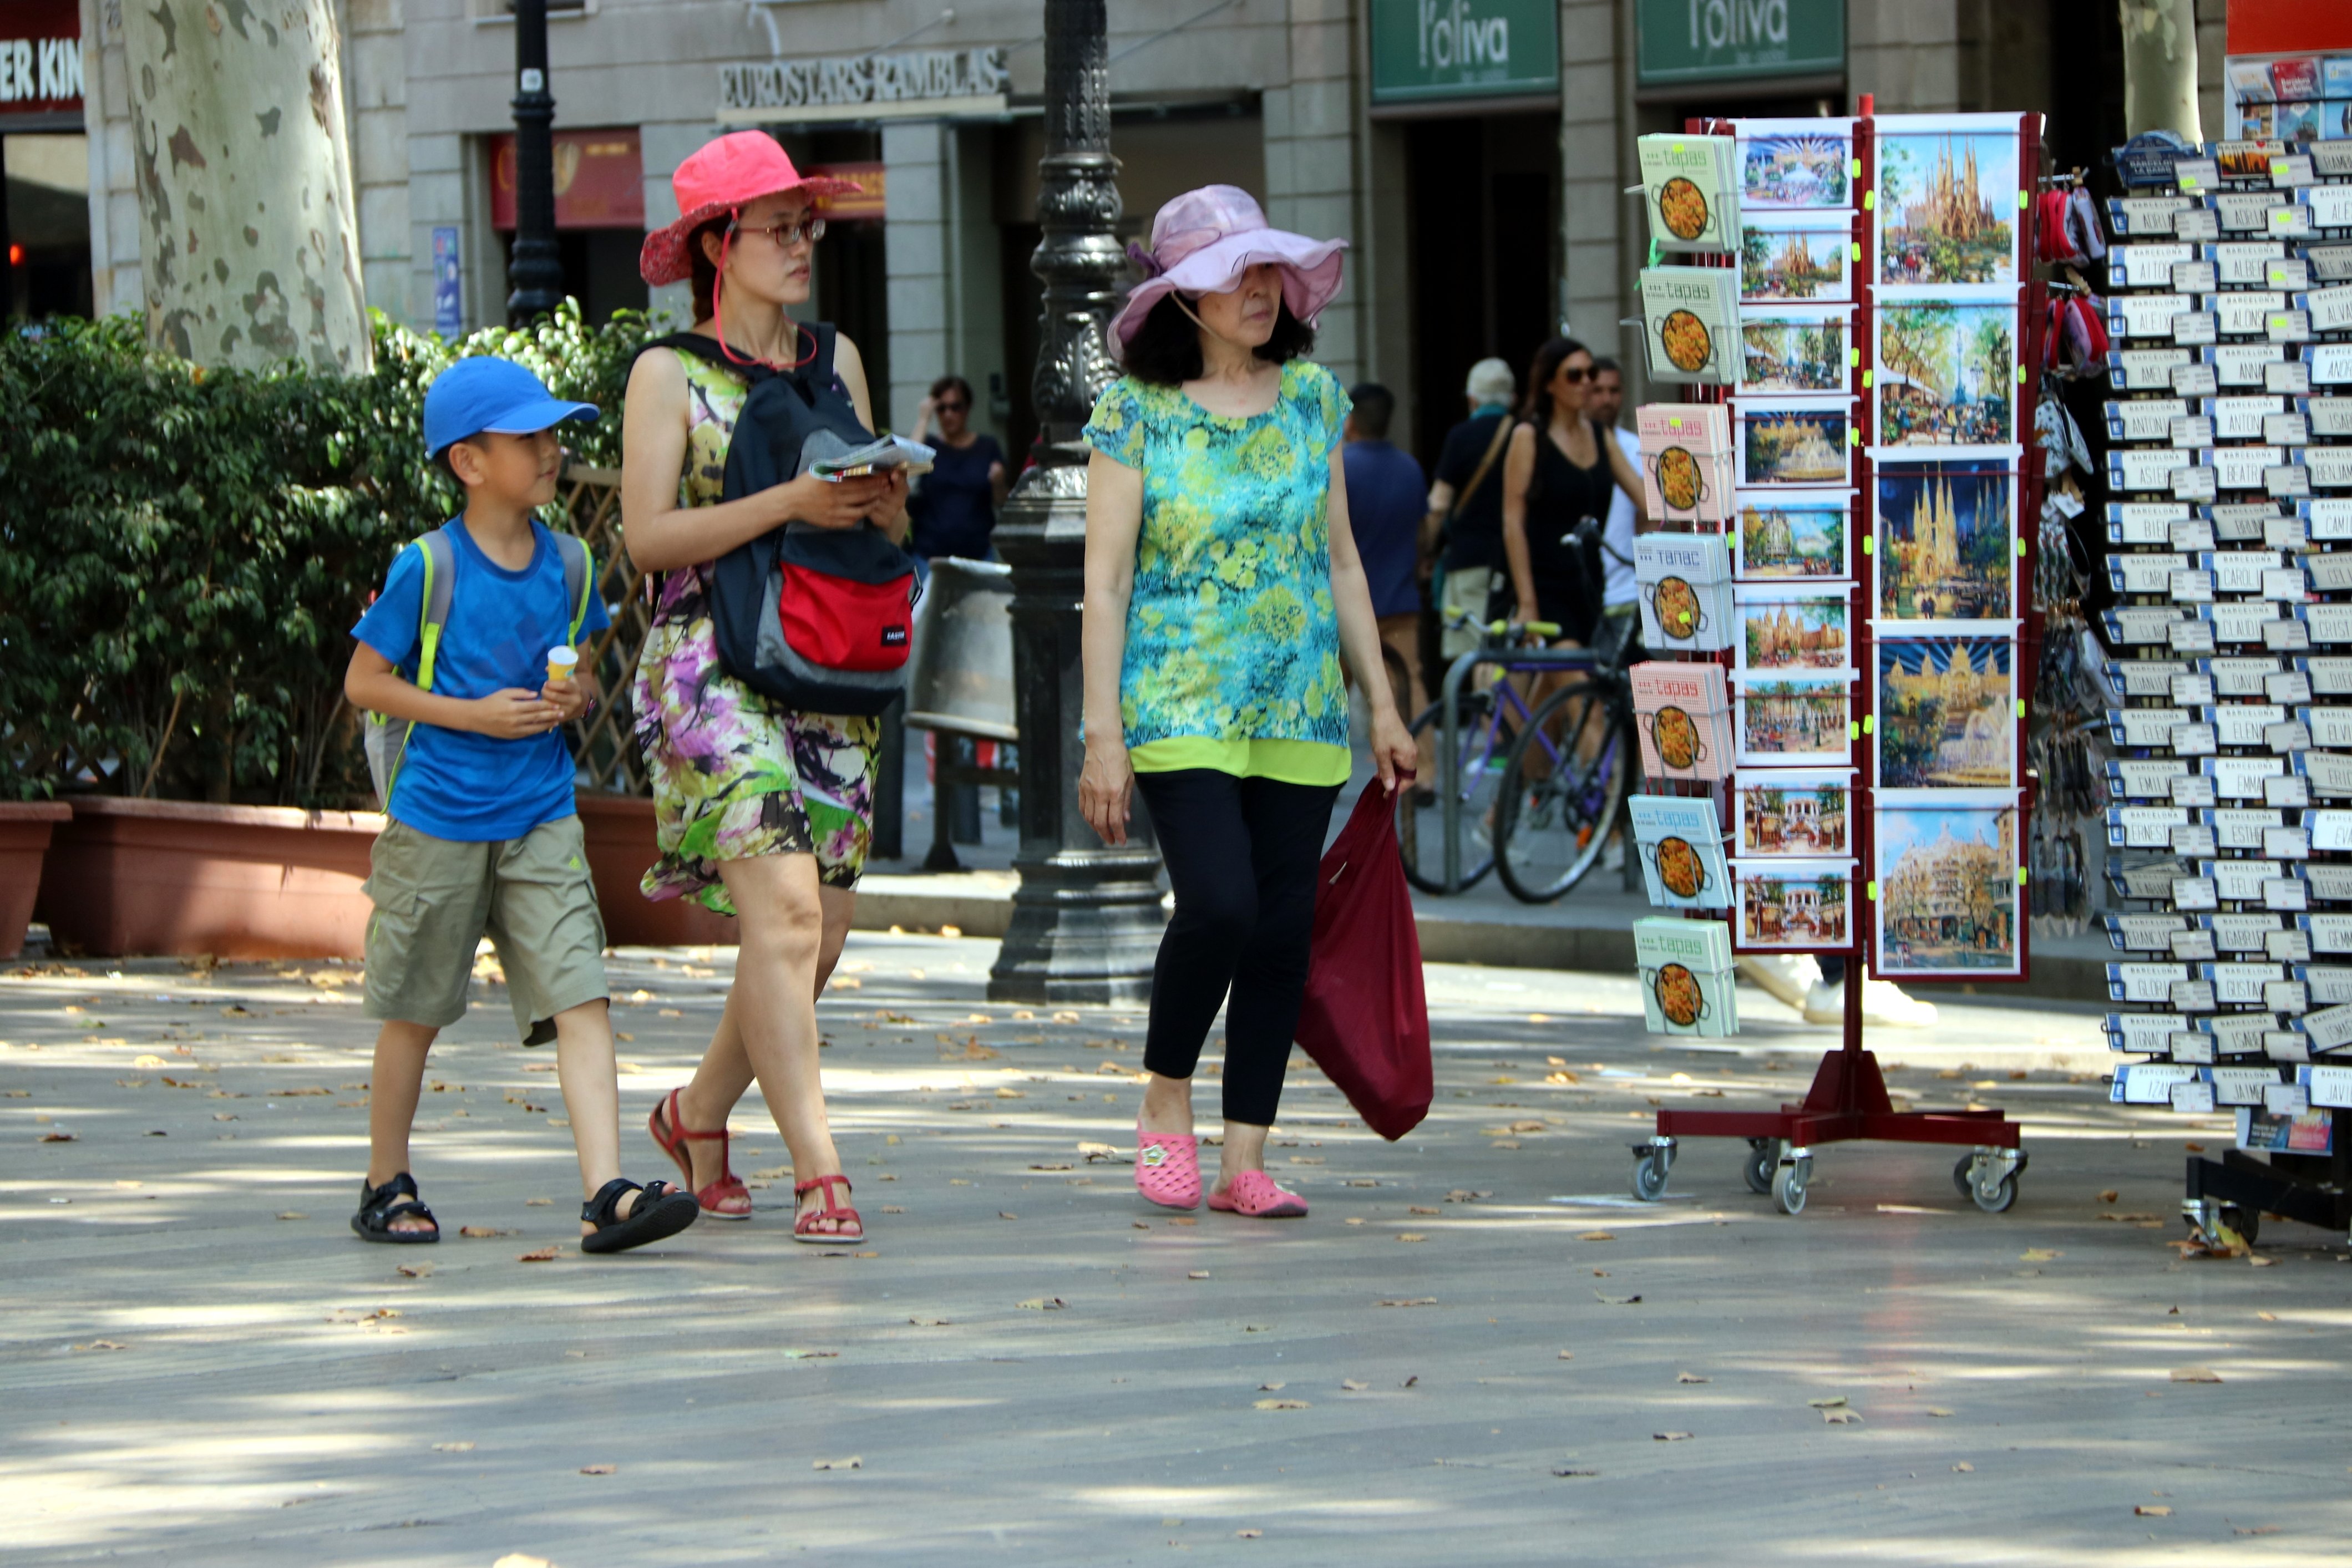 La despesa dels turistes internacionals a Catalunya al juliol augmenta un 3,2%